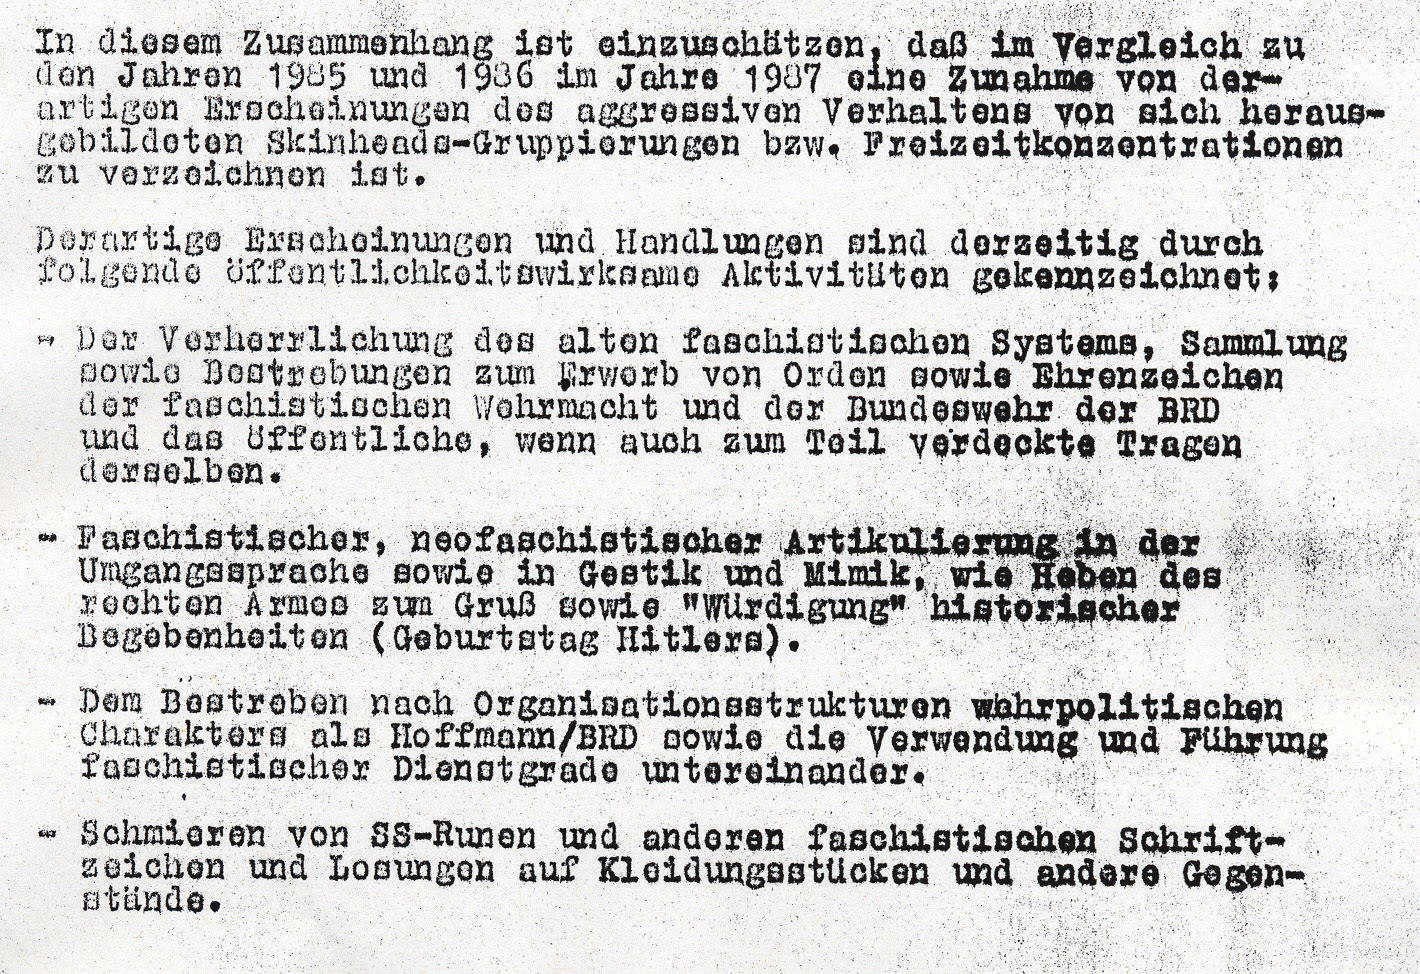 1978/1979 Anstieg schriftlicher staatsfeindlicher Hetze mit faschistischem Charakter (188 Fälle) 1982 lt.